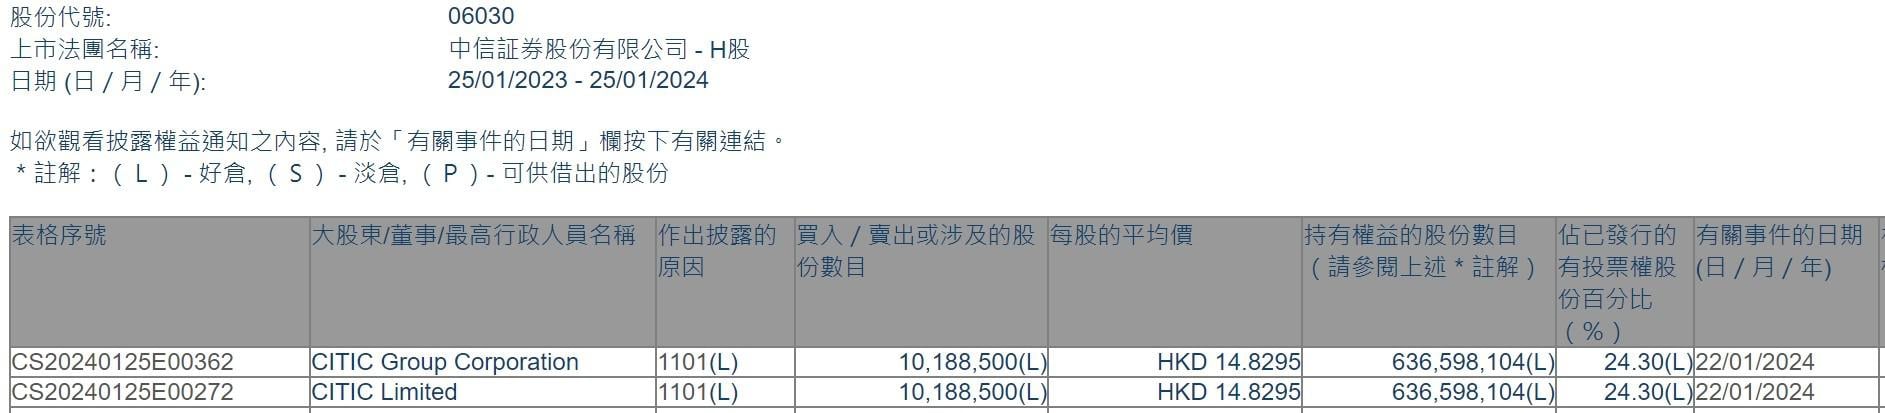 CITIC Limited增持中信证券(06030)1018.85万股 每股作价约14.83港元